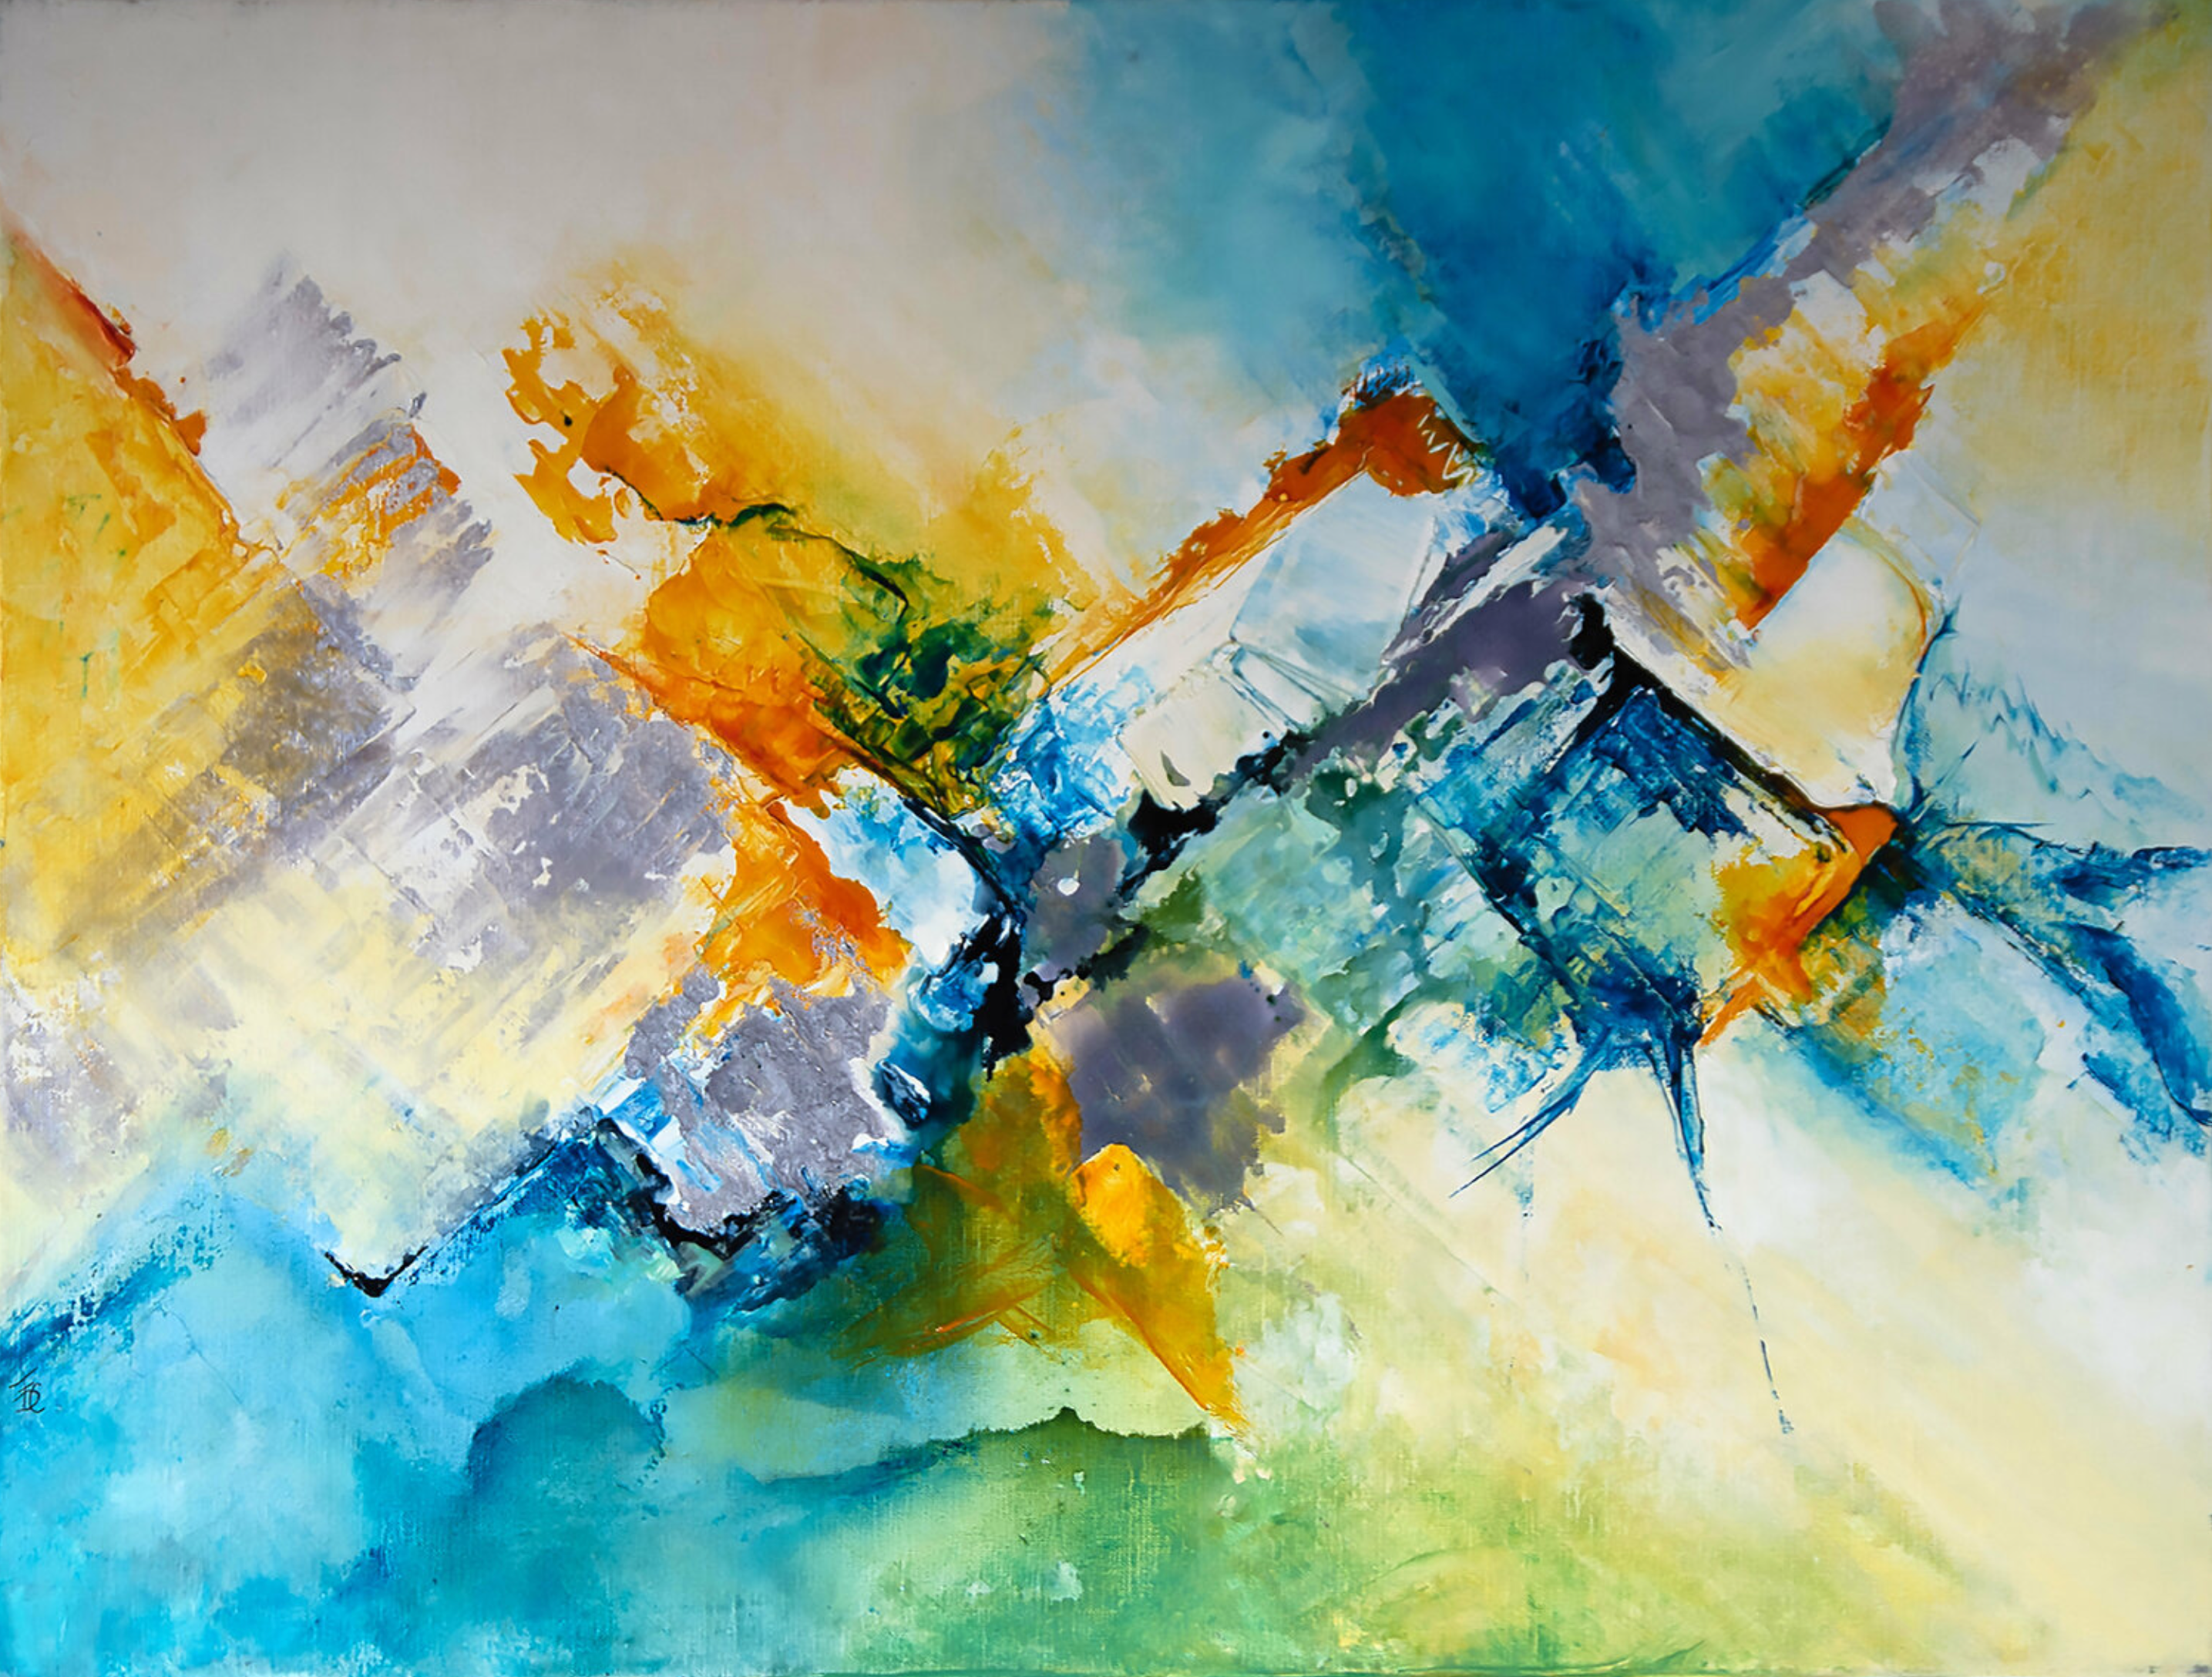 La peinture abstraite "Ossau Iraty" de Françoise Dugourd-Caput présente une abstraction qui évoque une montagne lumineuse du Pays basque, d'où le titre, le bleu du ciel, l'orange des fruits et des fleurs, le jaune du soleil, le vert des prairies et les sommets gris des montagnes.